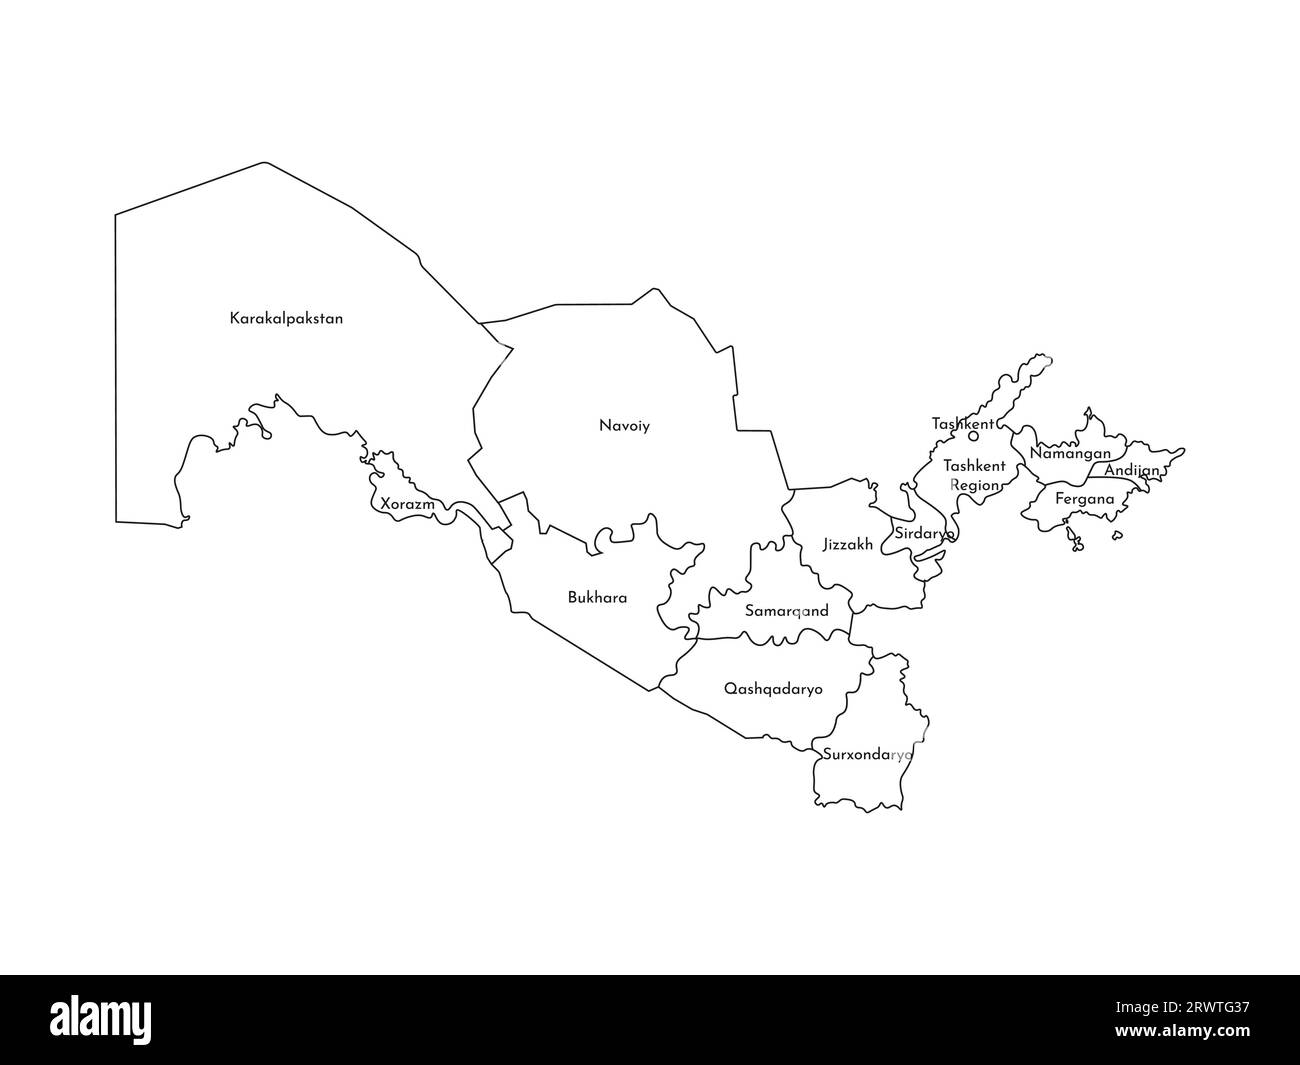 Illustrazione vettoriale isolata della mappa amministrativa semplificata dell'Uzbekistan. Confini e nomi delle regioni. Silhouette nere. Illustrazione Vettoriale